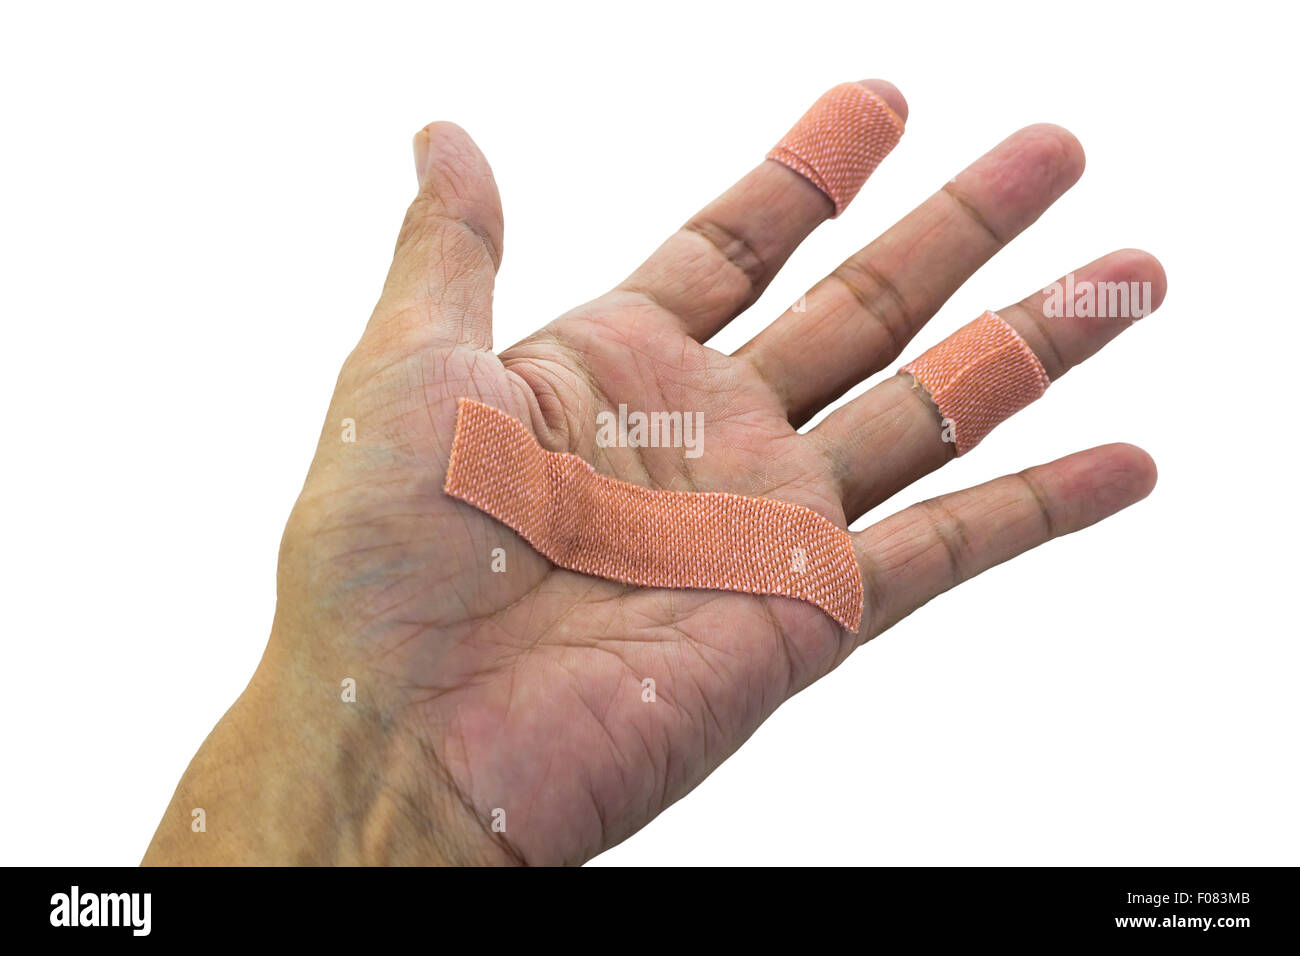 Handfläche und Finger mit Pflaster, isoliert auf weißem Hintergrund und  Clipping-Pfad Stockfotografie - Alamy